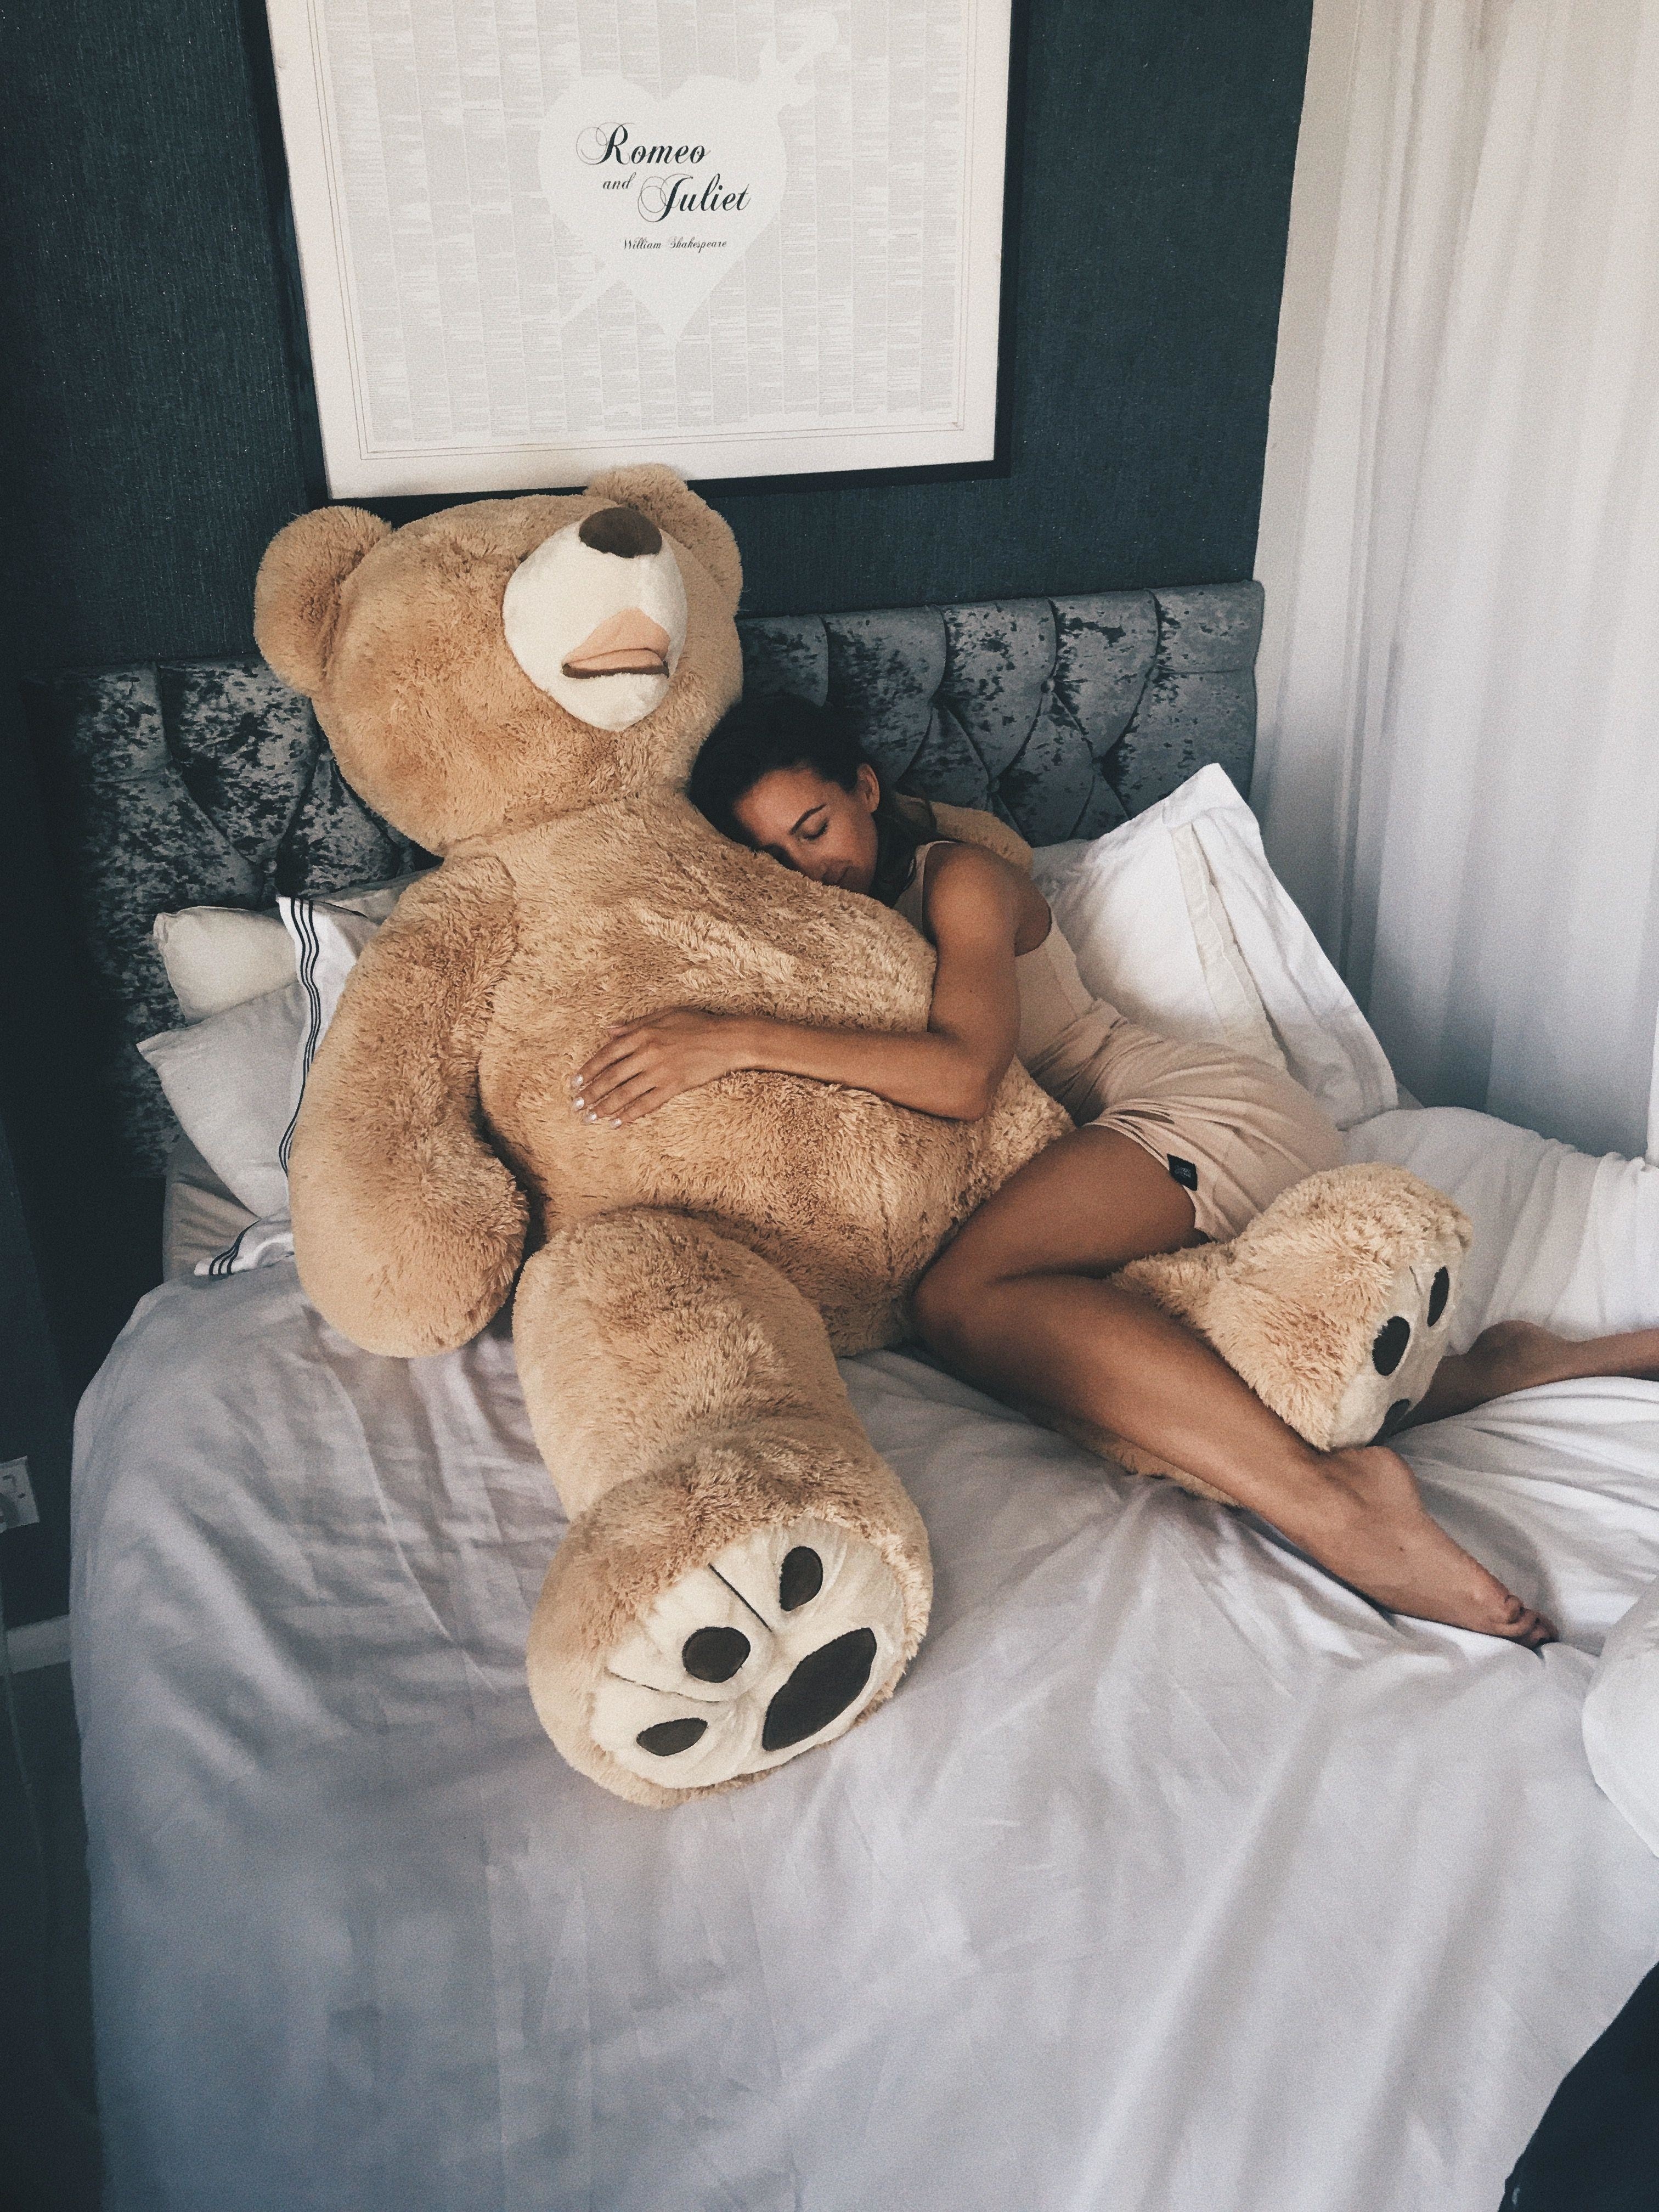 Teddy - Sex with a teddy bear guy - porn photo